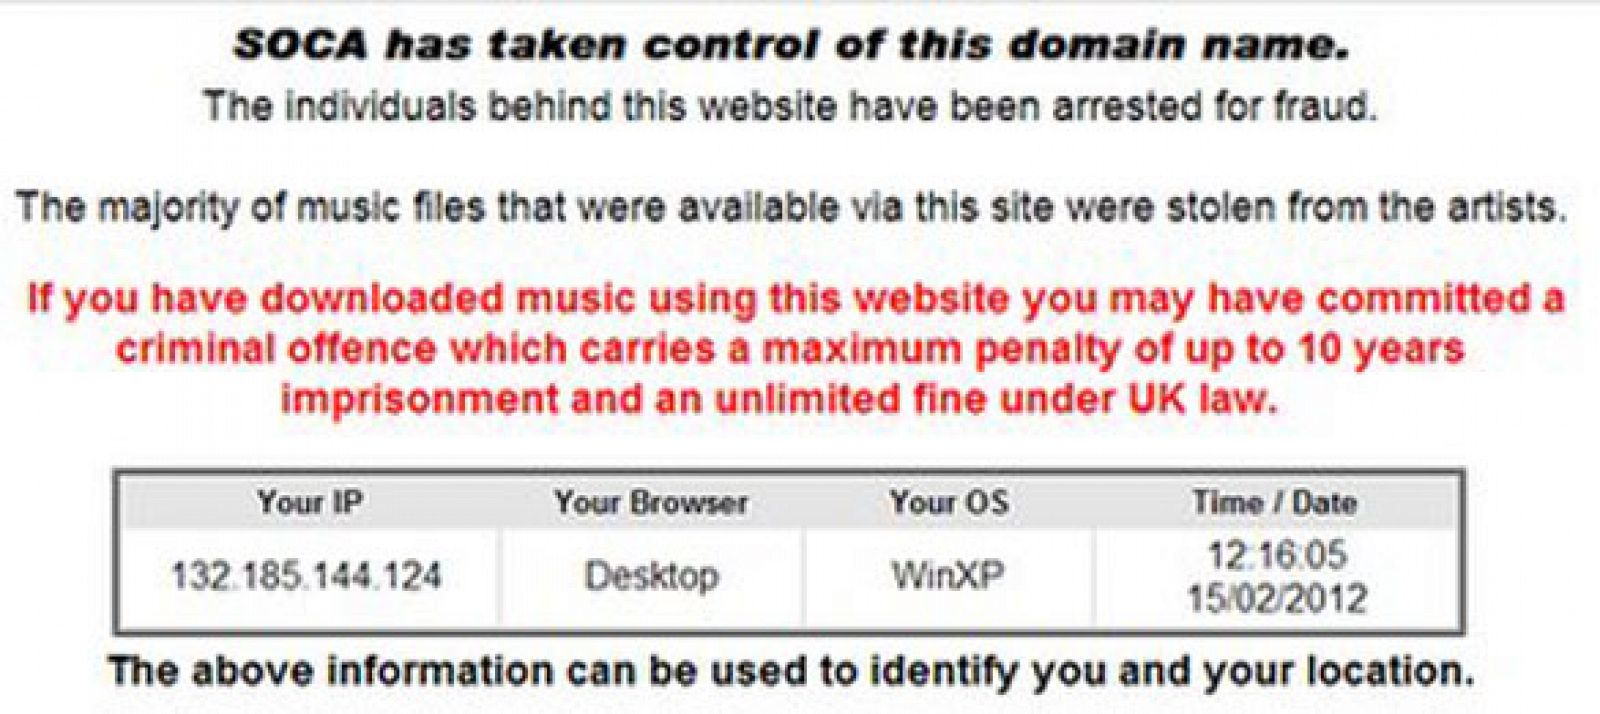 SOCA advierte a los usuarios sobre las consecuencias de descargarse música ilegal